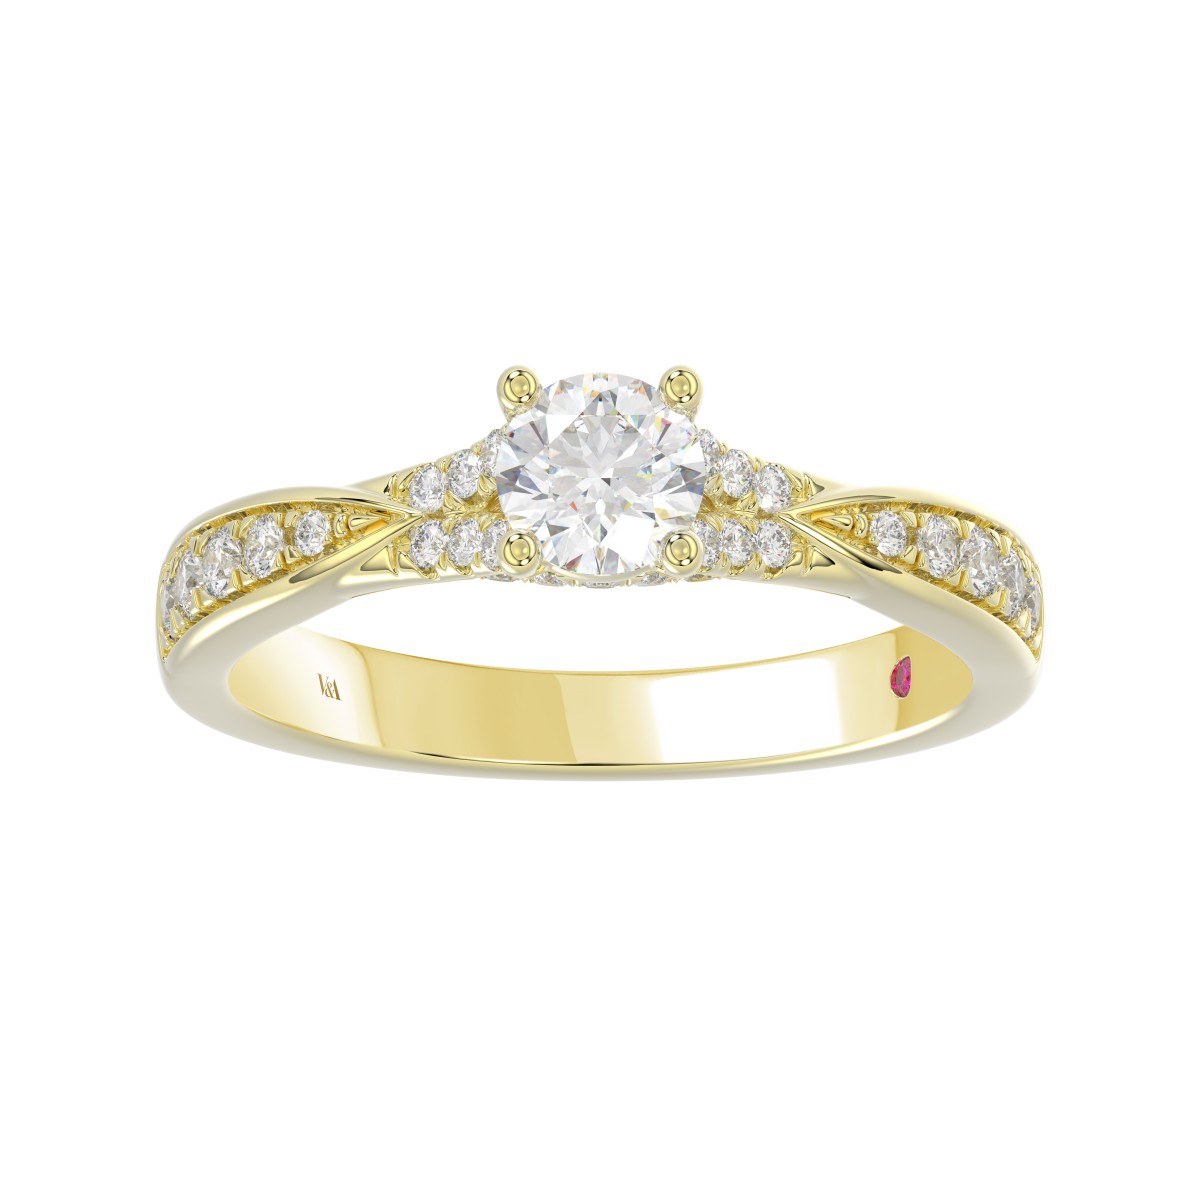 14K YELLOW GOLD 3/4CT ROUND DIAMOND LADIES RING ( CENTER STONE ROUND DIAMOND 0.40CT)